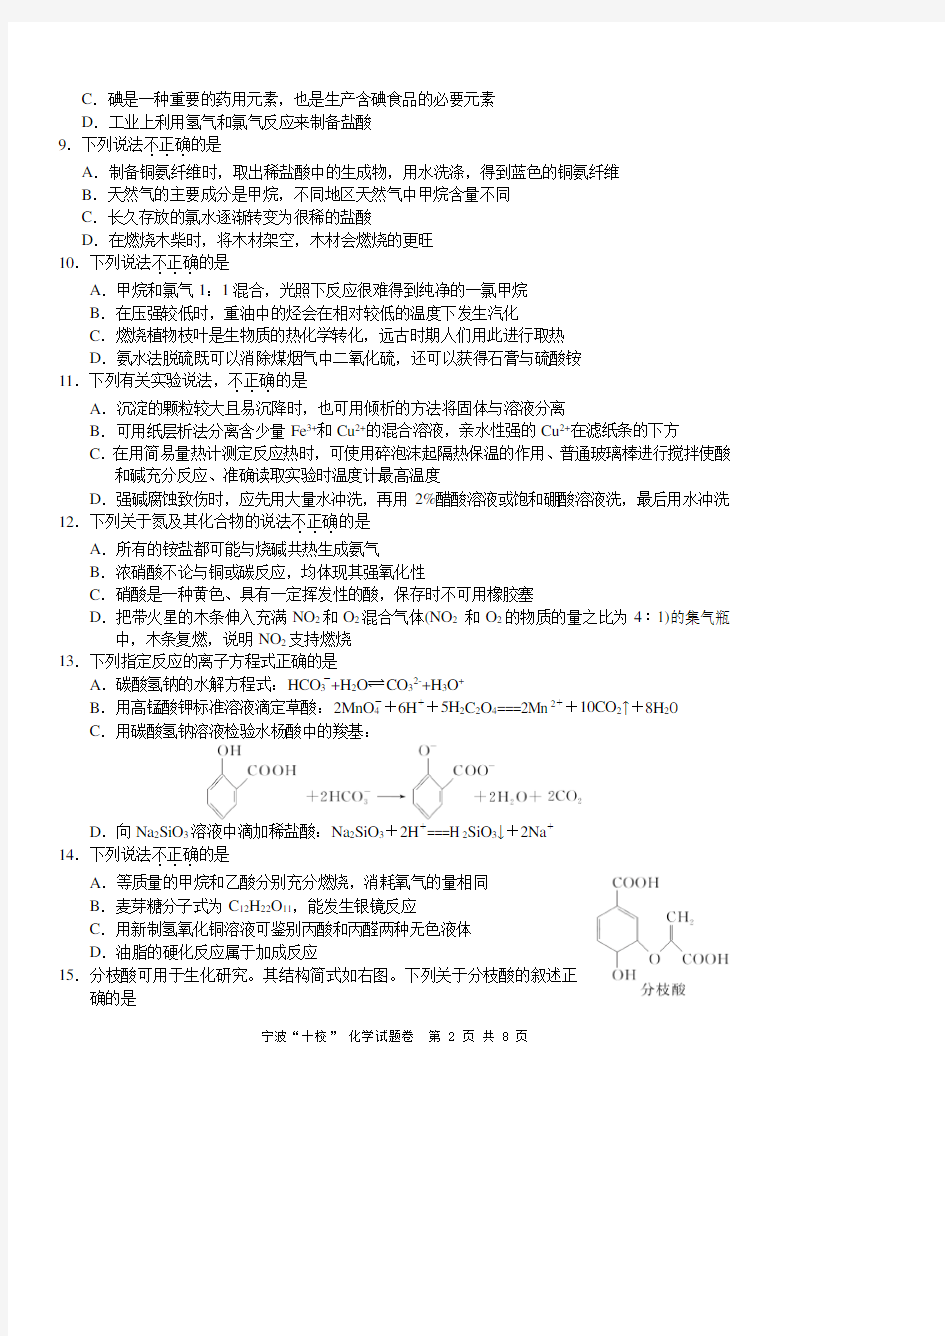 【化学原稿】2020年3月宁波十校联考化学试题卷(含答案)